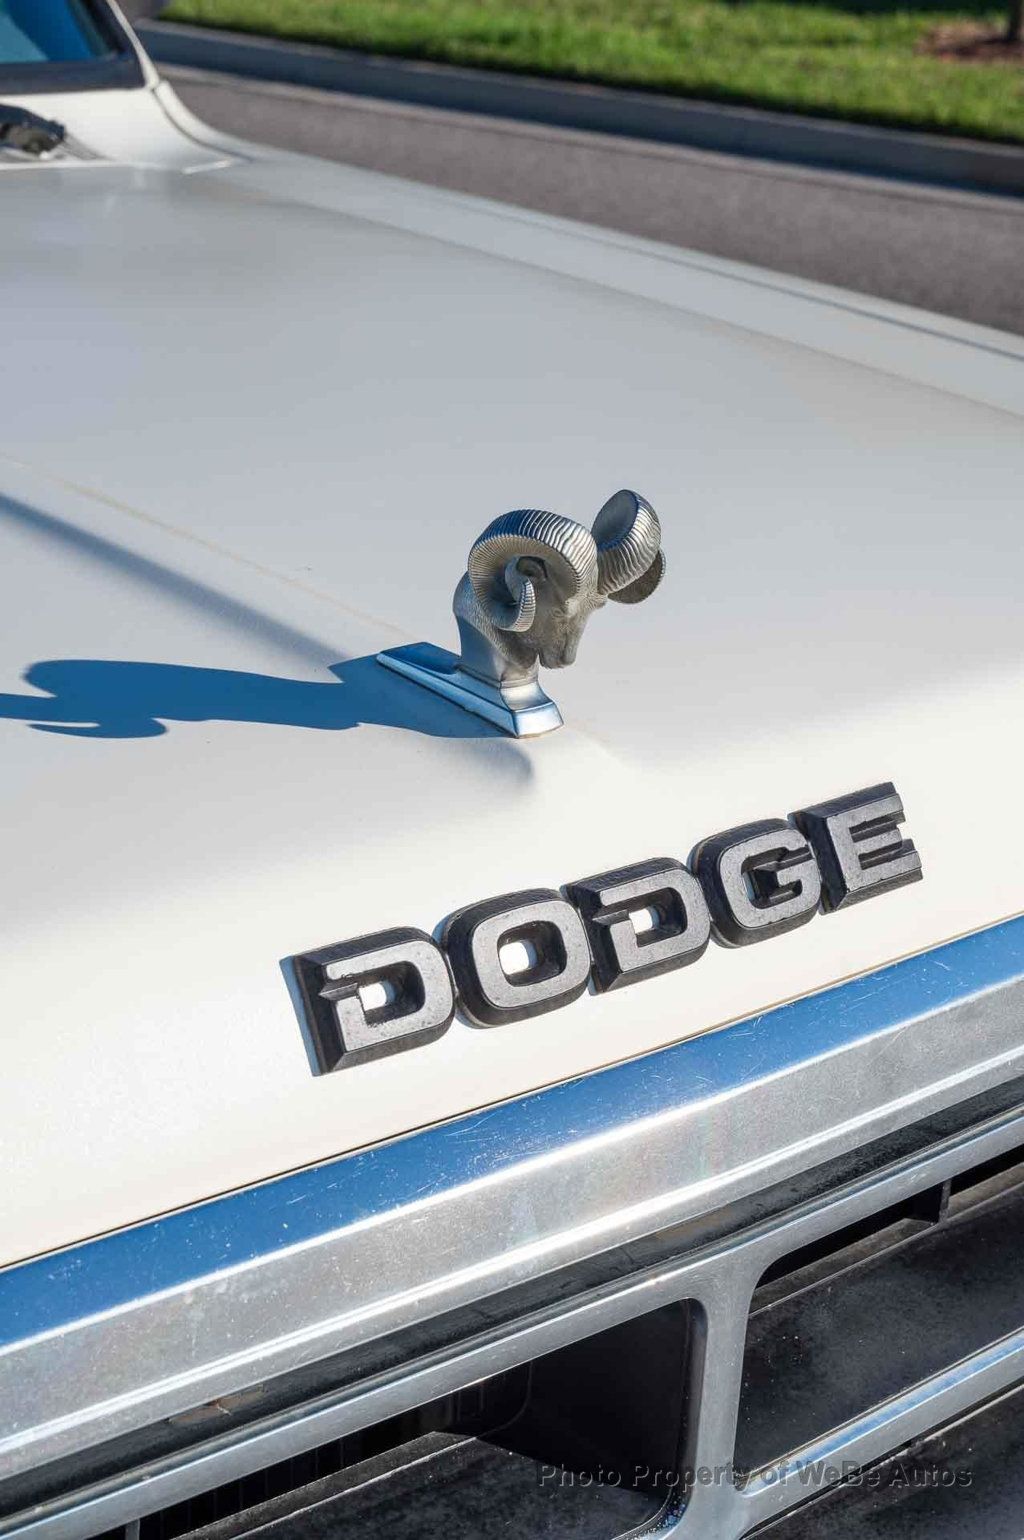 Kit distribución VOLKSWAGEN Dodge 1500/1800 – Motor Lider